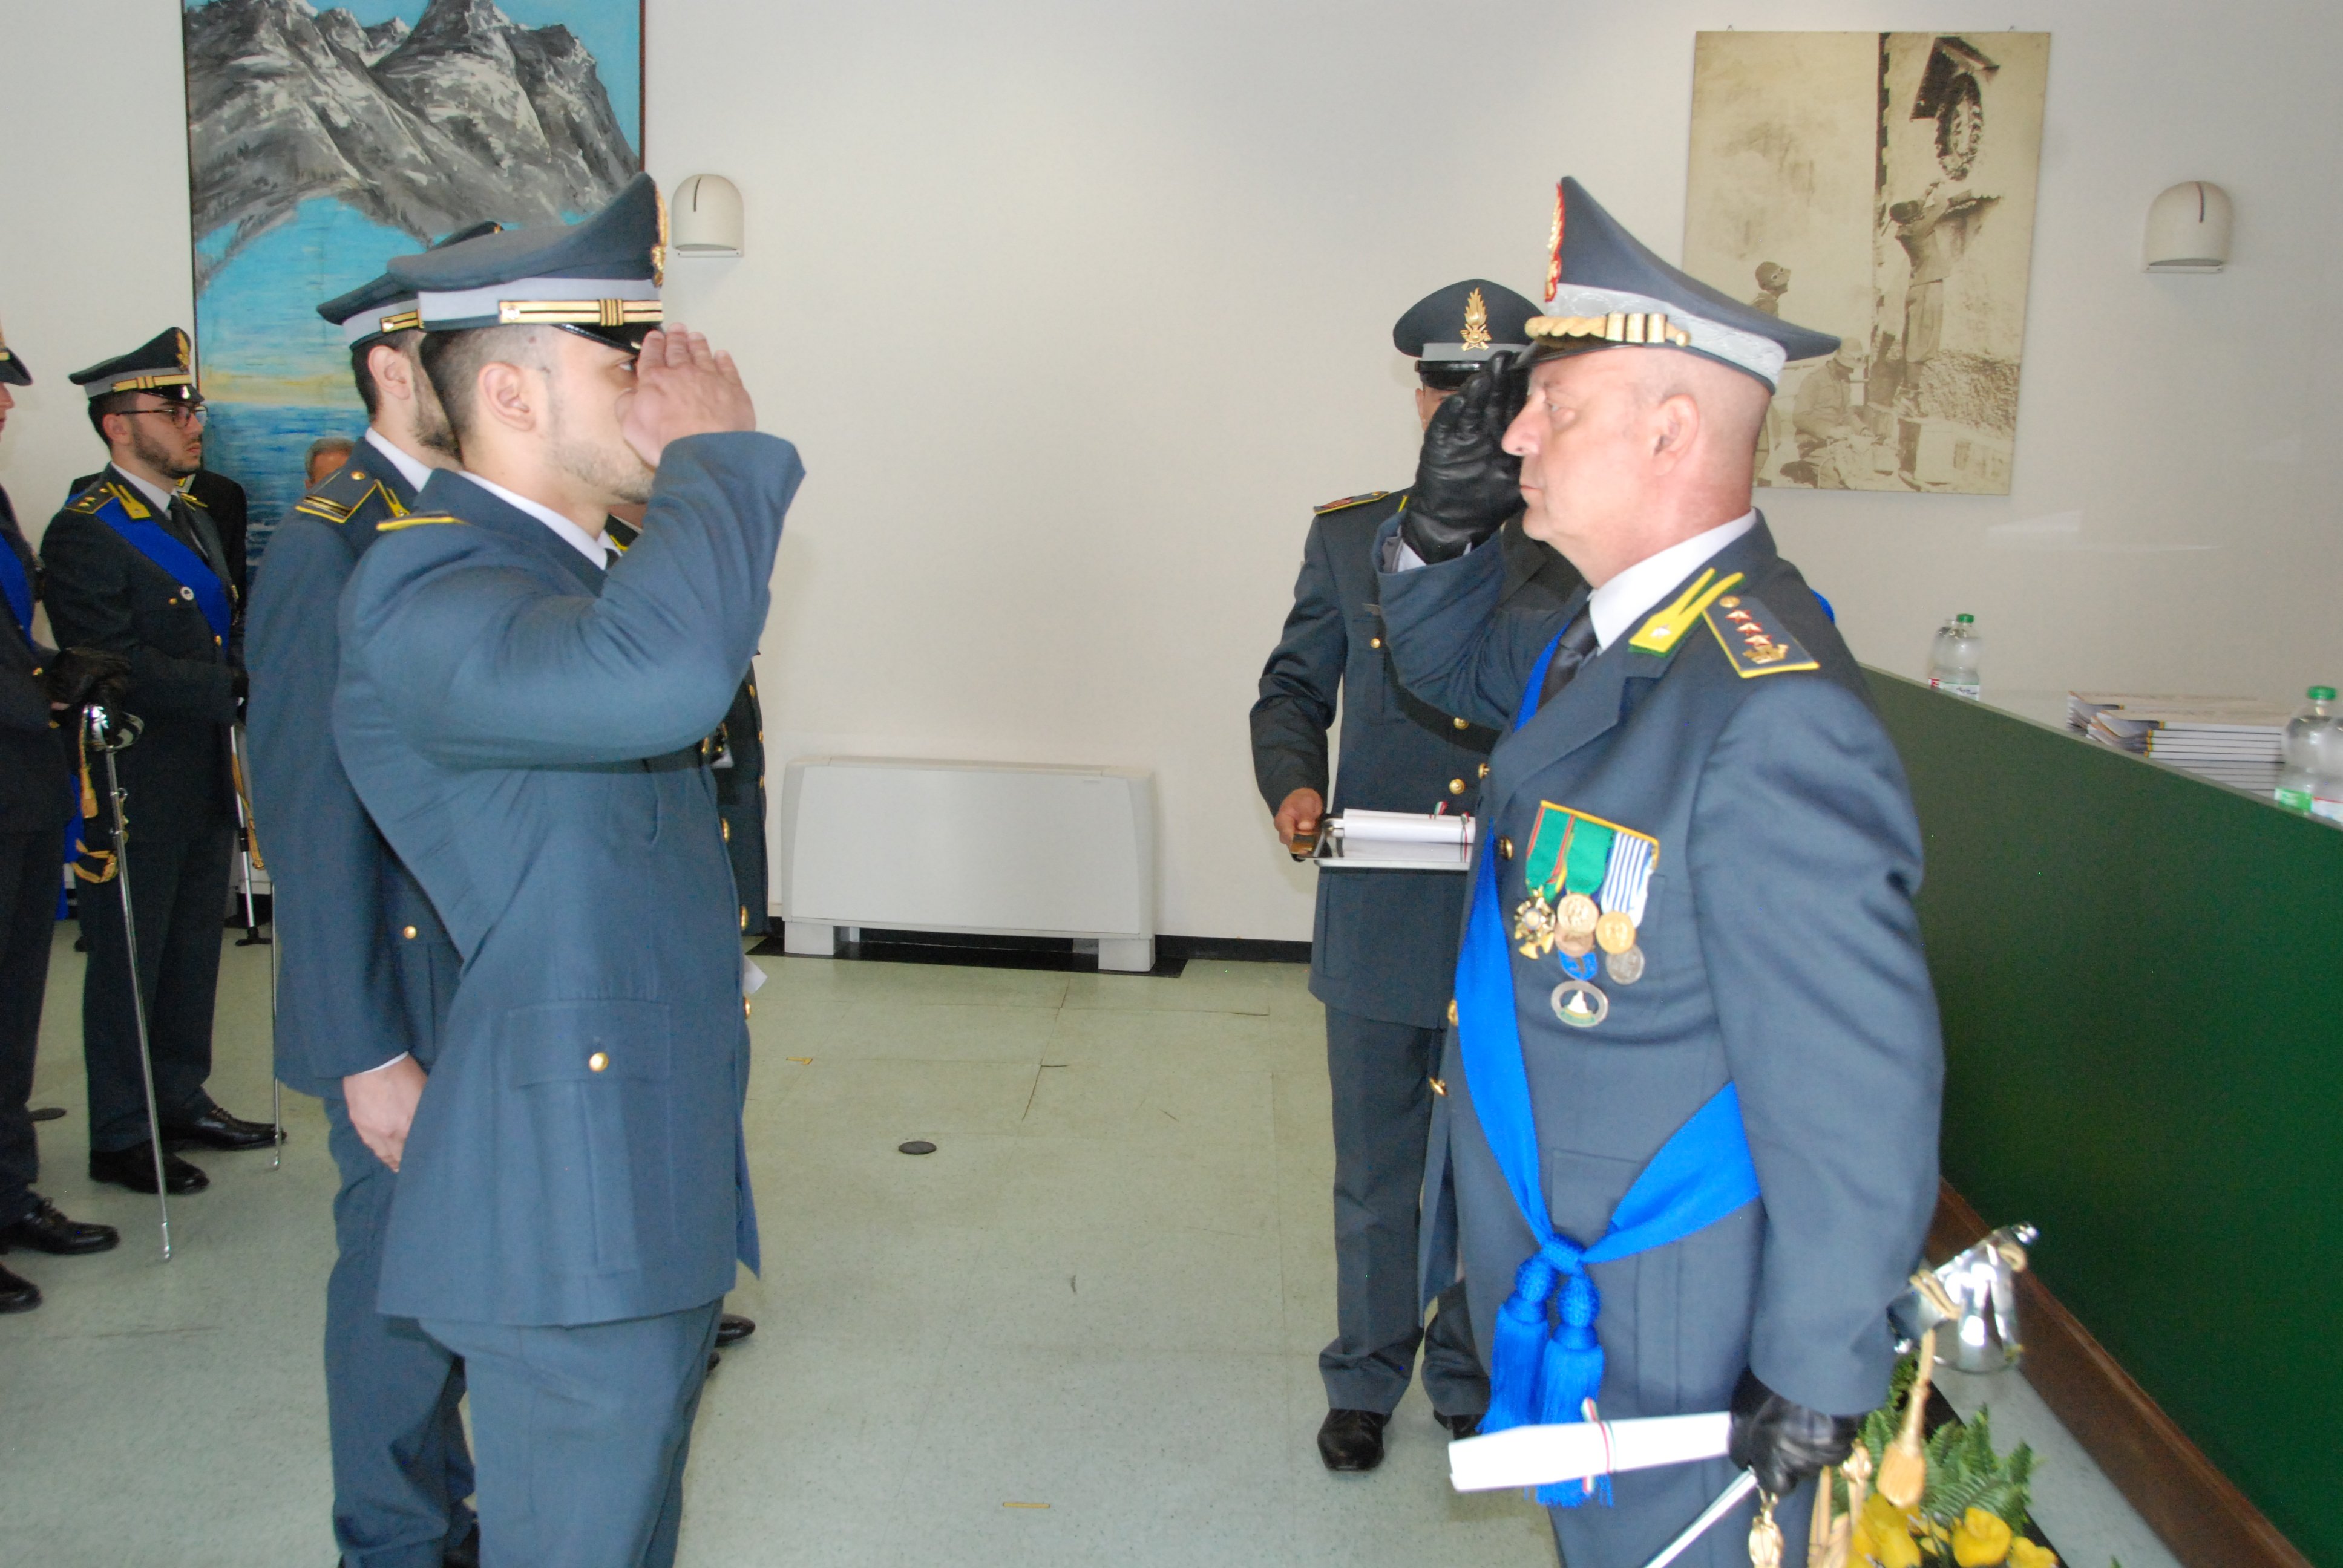 La Guardia di Finanza festeggia 245 anni. I premiati del Comando provinciale di Alessandria